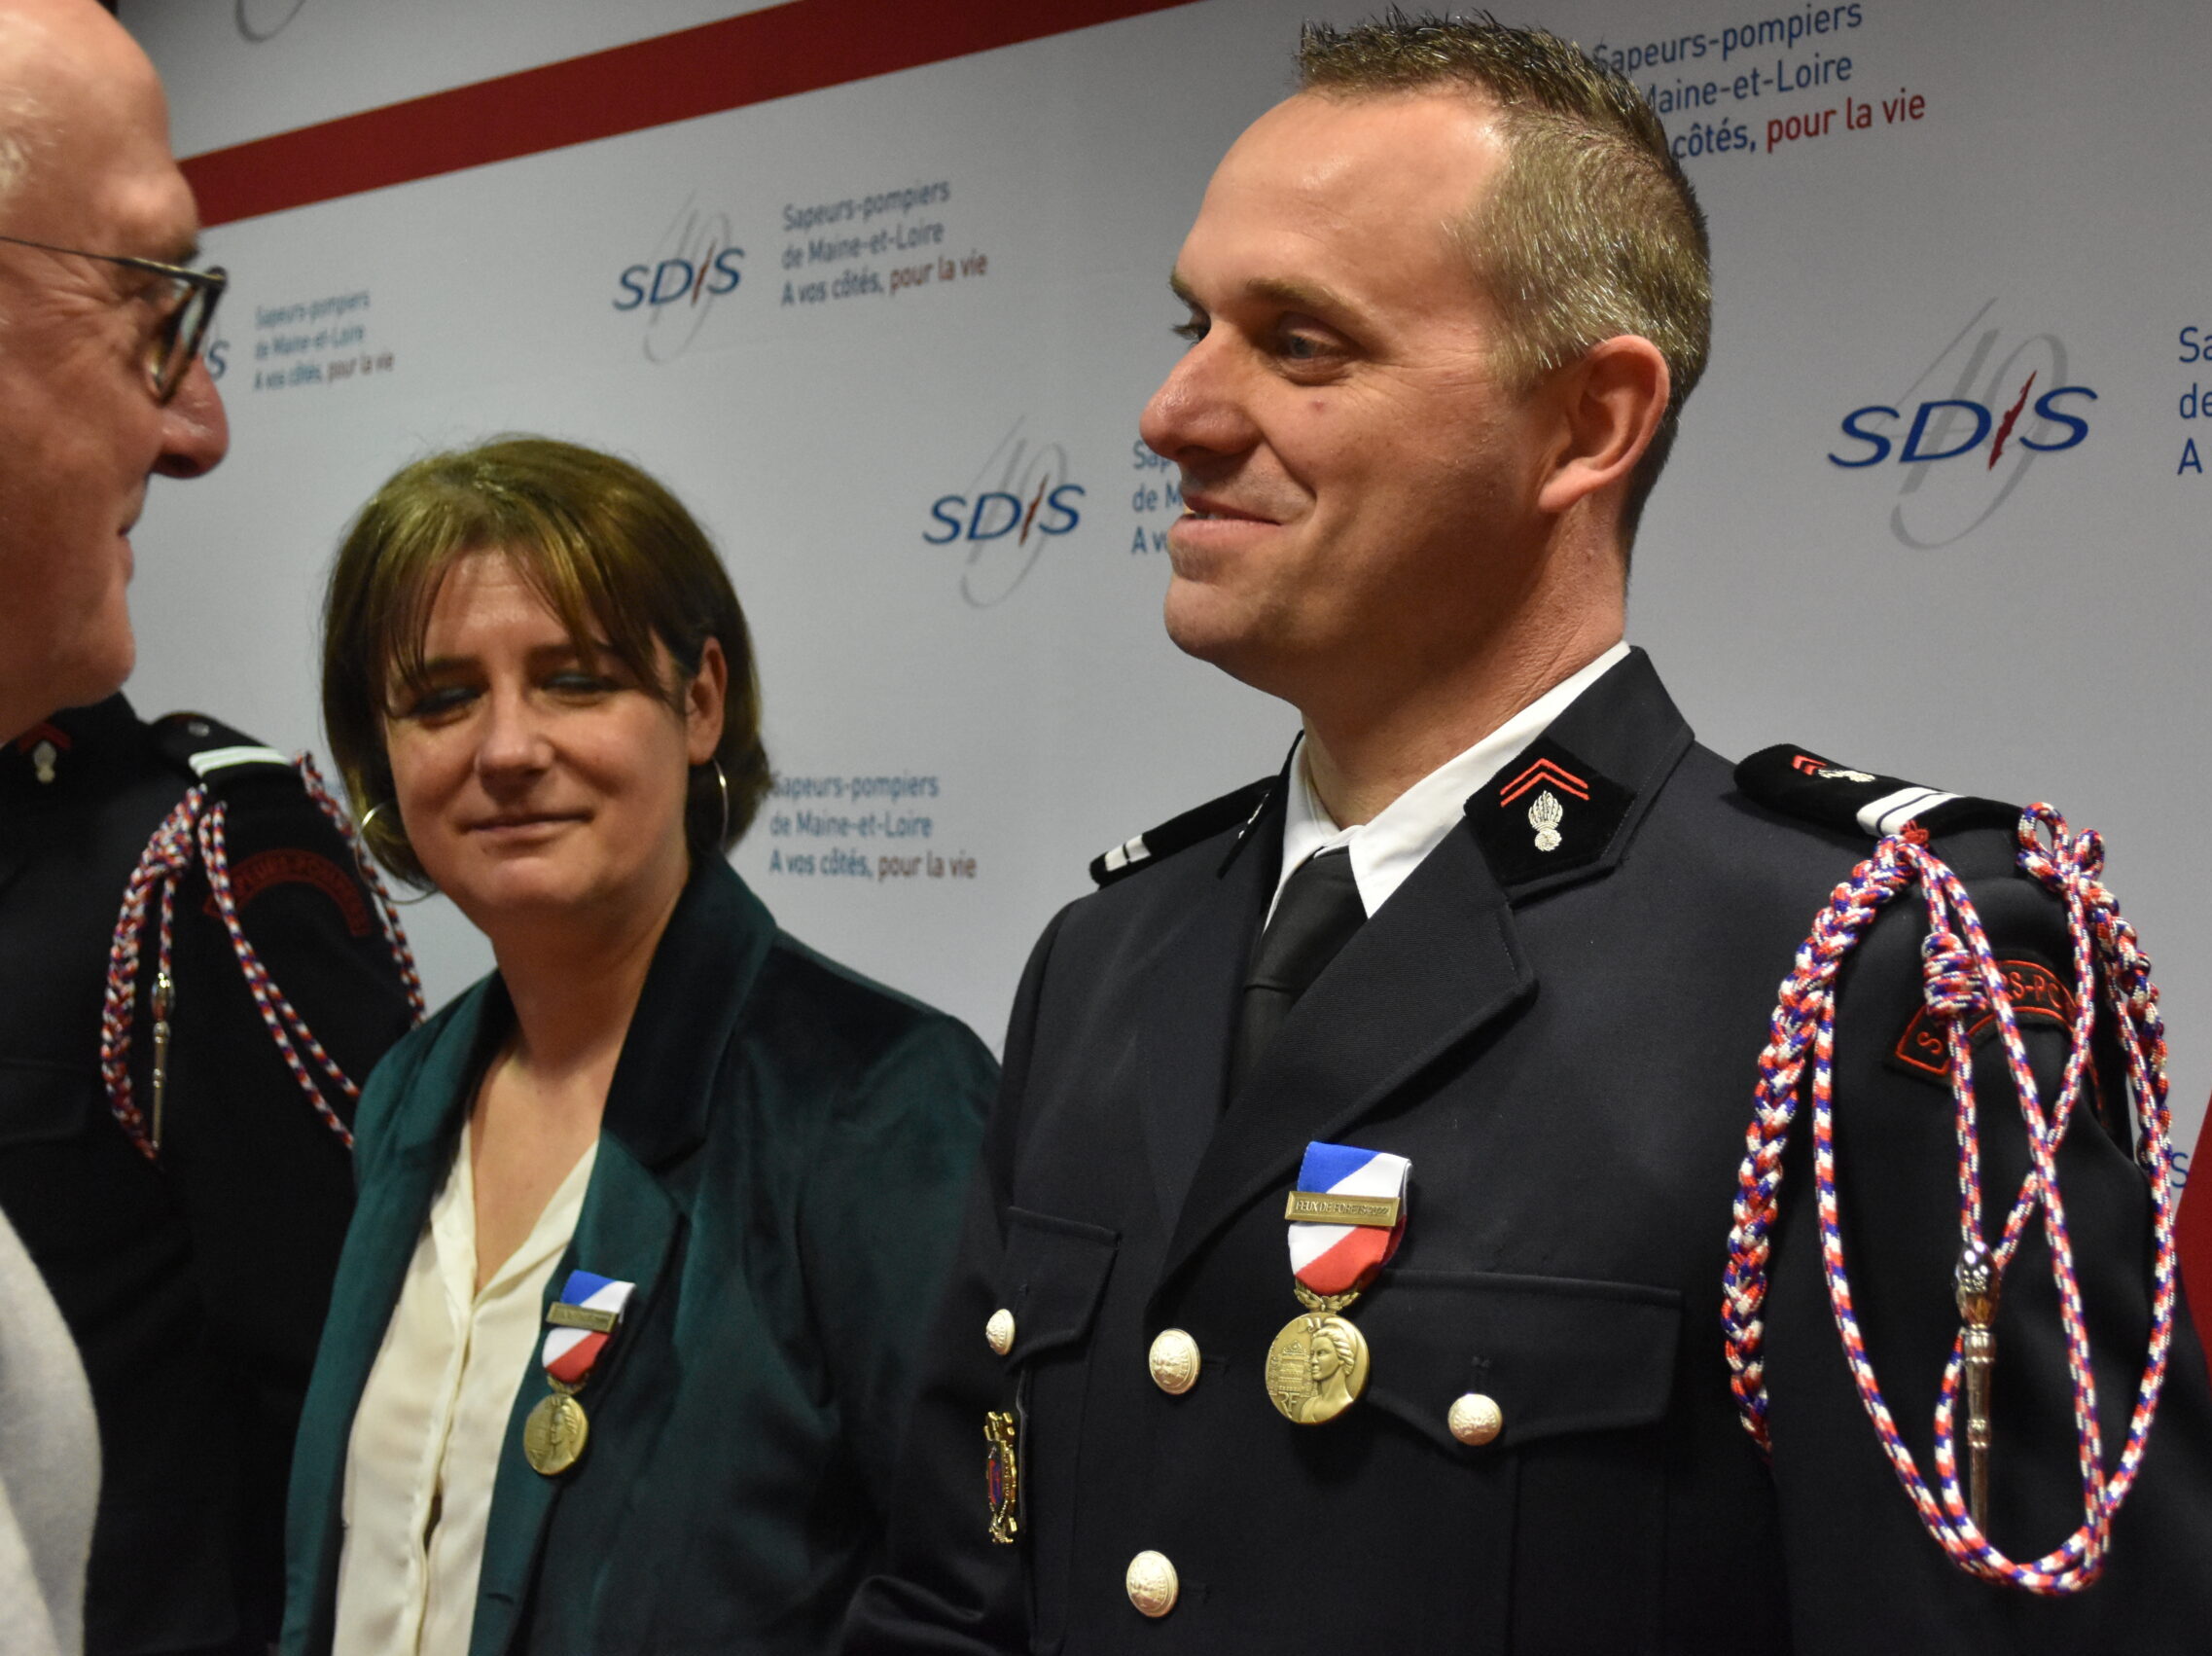 Cérémonie de remise de la Médaille de la Sécurité Intérieure (MSI), Sapeurs-Pompiers, Beaucouzé